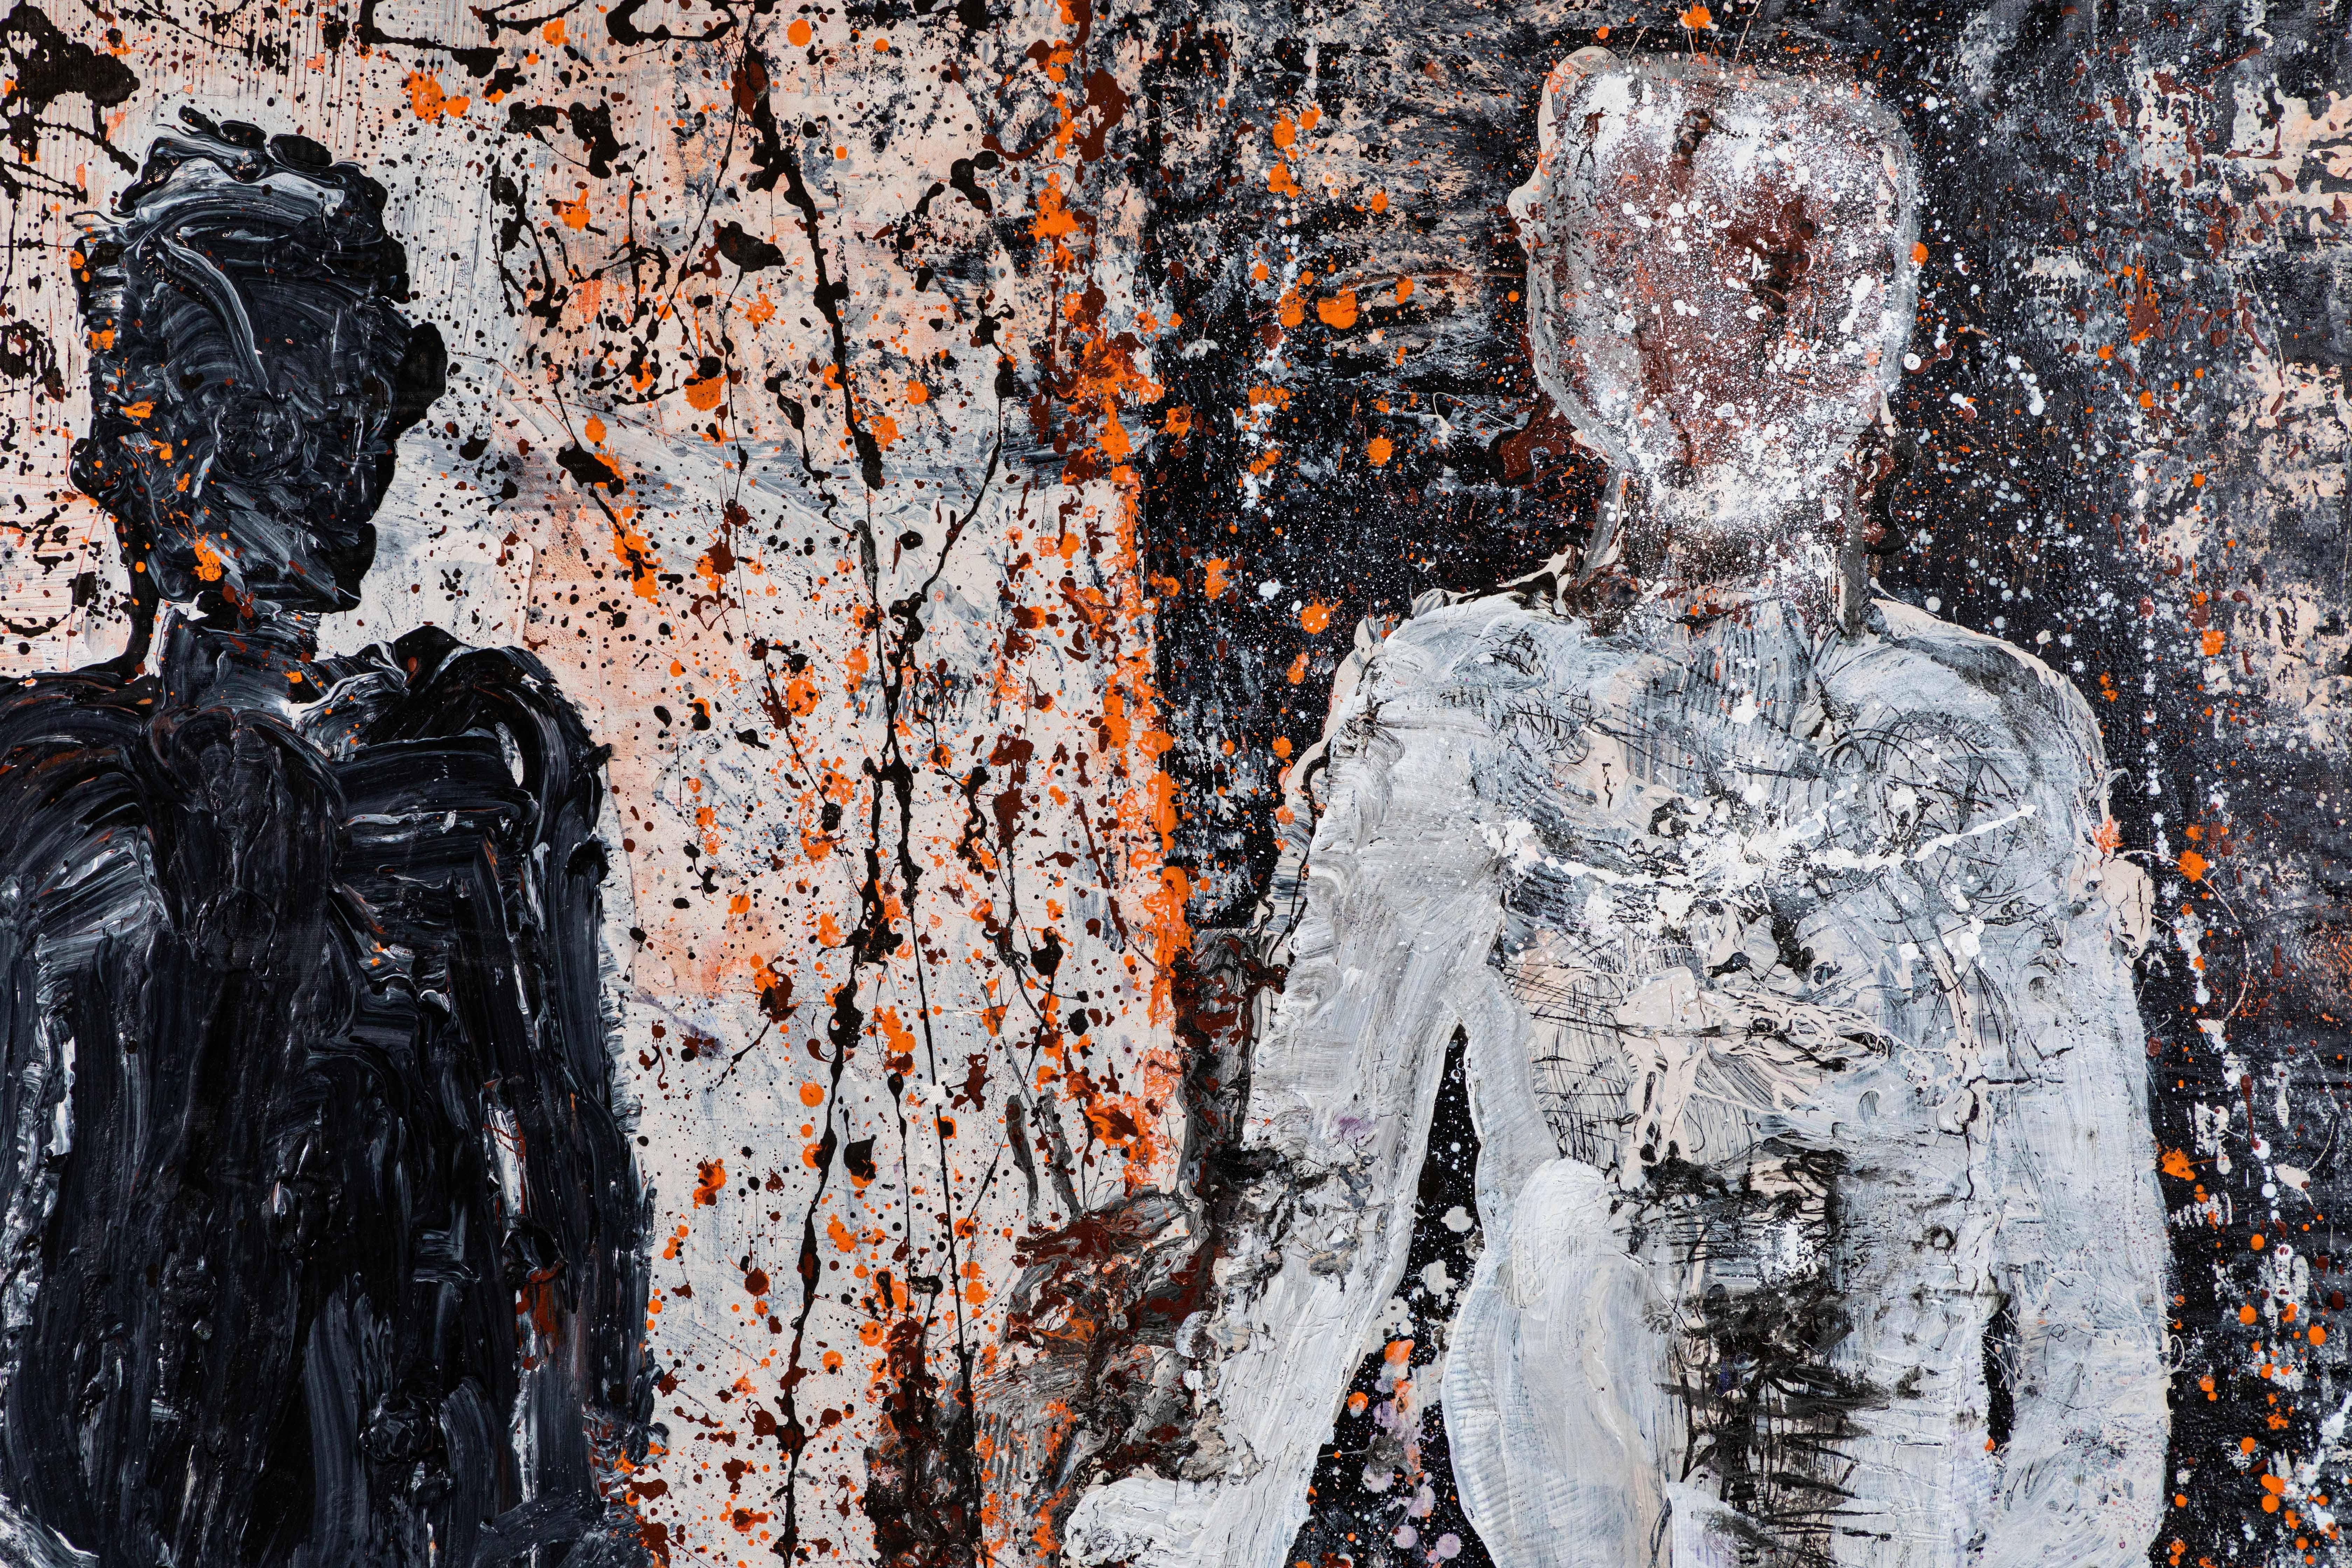 Großes abstraktes Acryl auf Leinwand von dem bekannten Künstler Christopher Shoemaker aus Palm Springs. Das Gemälde, das von zwei großen menschlichen Gestalten dominiert wird, ist mit einem Spritzer-Stil in Schwarz, Weiß, Orange und Ochsenblutfarben